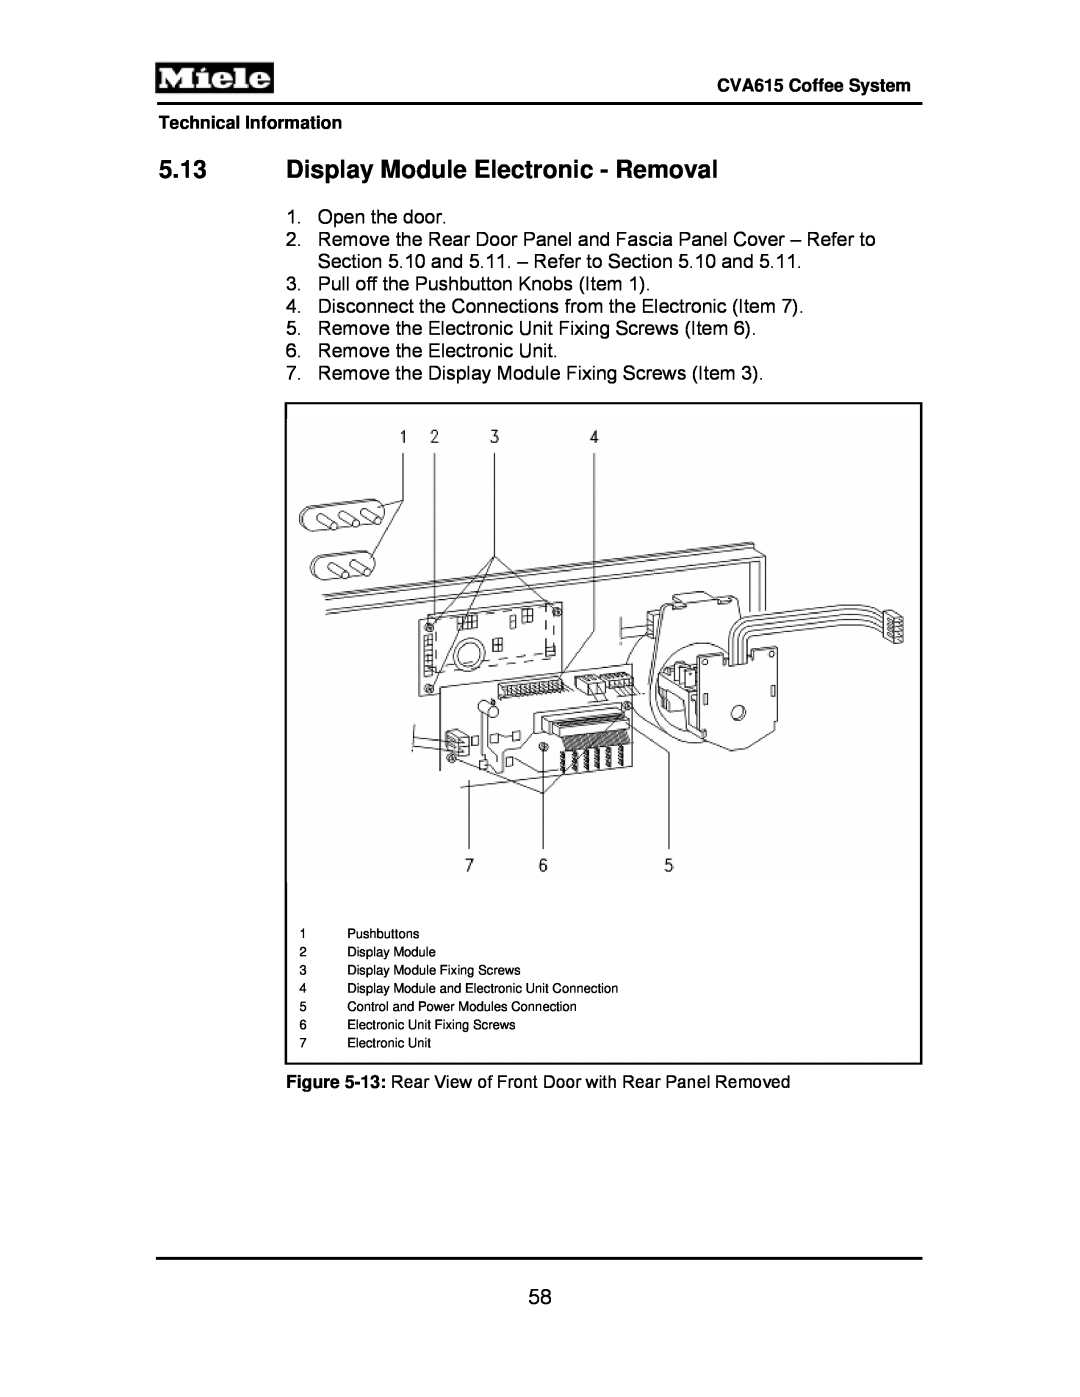 Miele CVA615 manual 5.13Display Module Electronic - Removal 